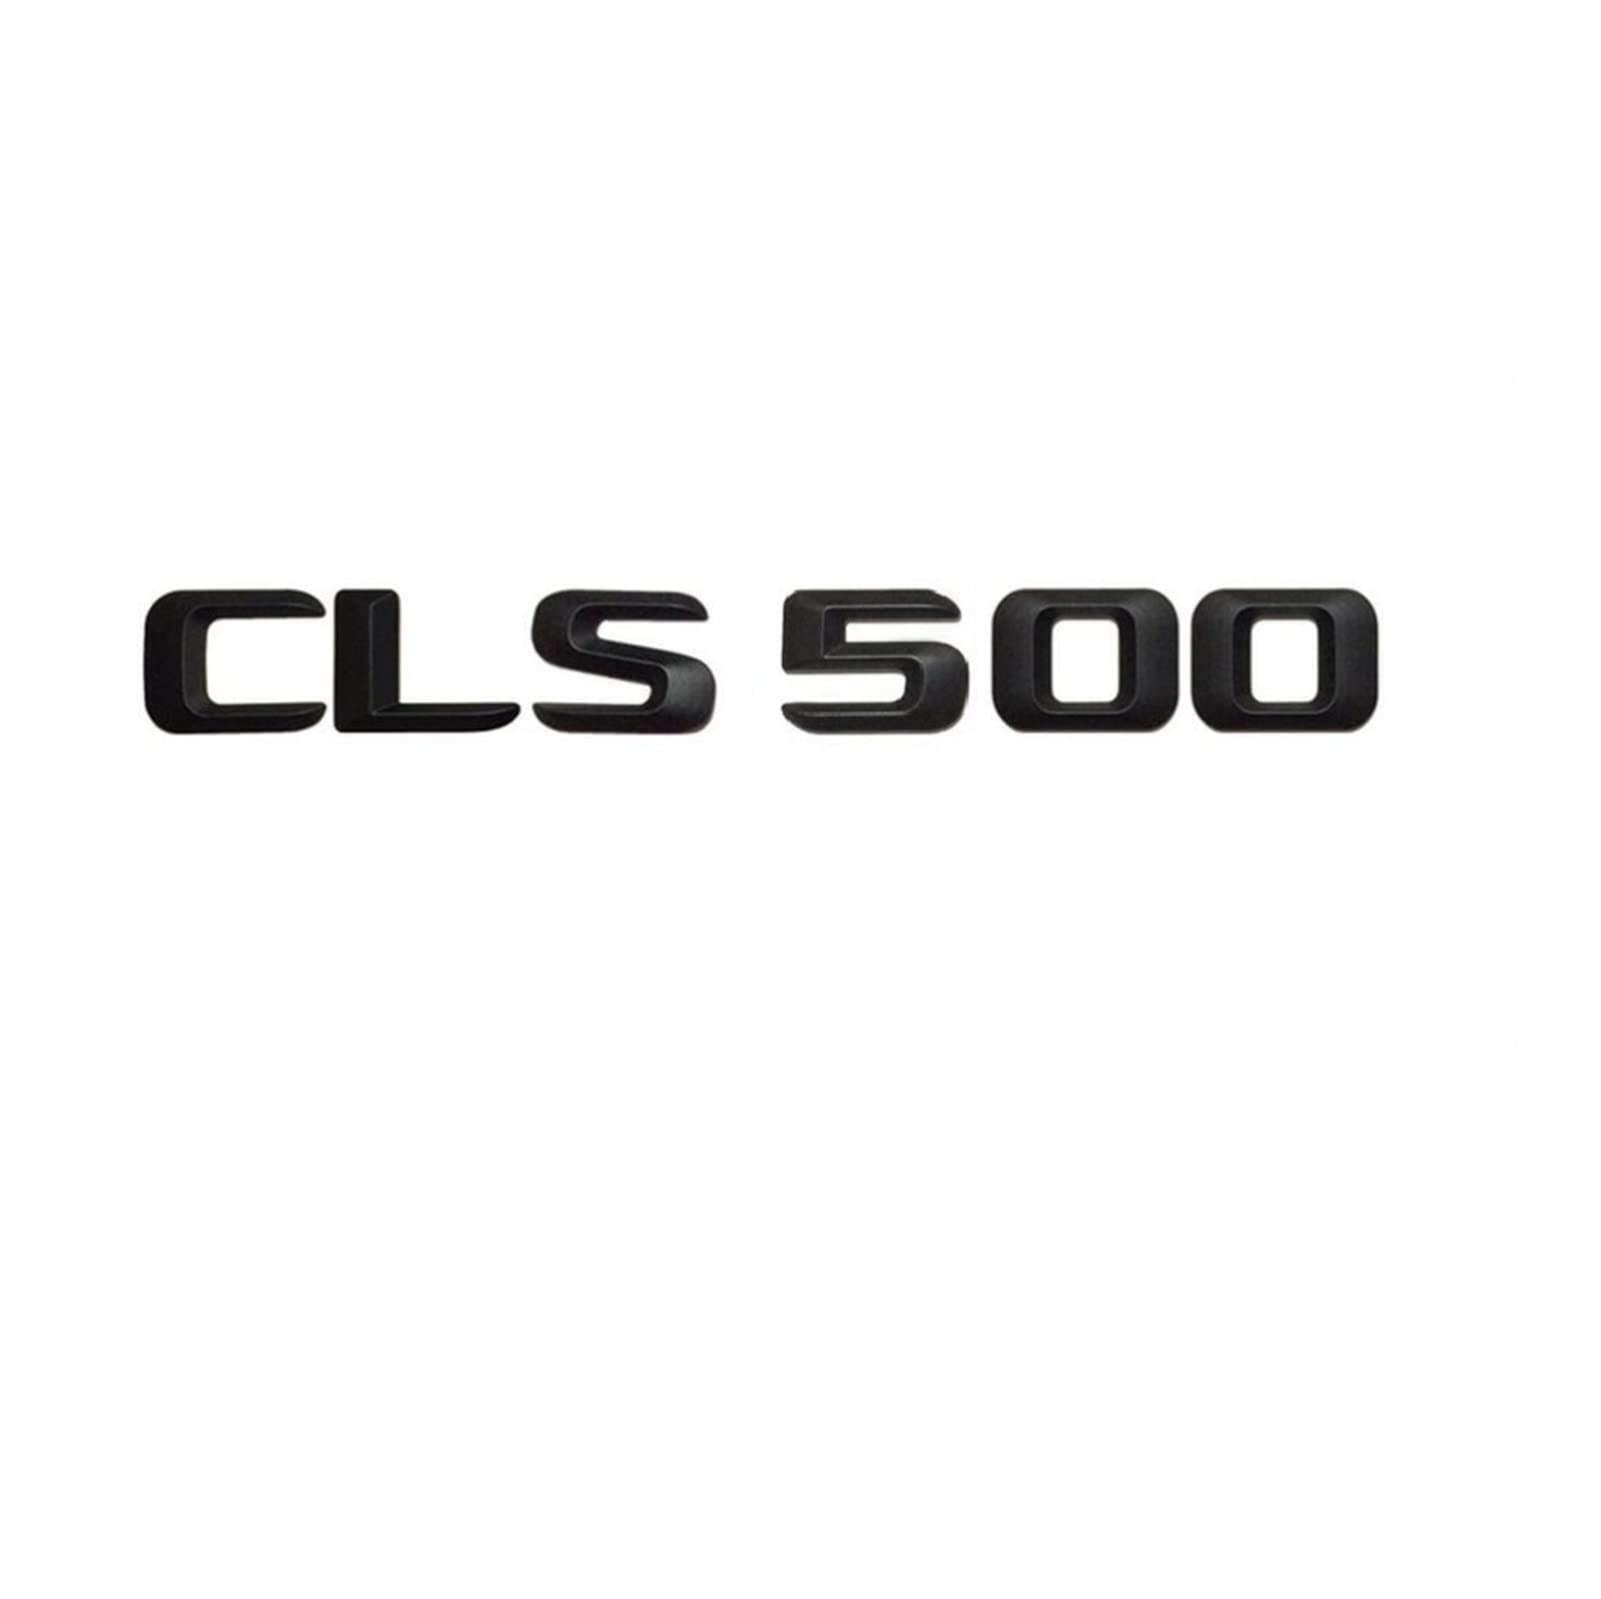 CEVIZ Mattschwarz CLS 500" Auto-Kofferraum-hintere Buchstaben Wort-Abzeichen-Emblem-Buchstaben-Aufkleber-Aufkleber-Aufkleber kompatibel mit Mercedes Benz CLS-Klasse CLS500 von CEVIZ